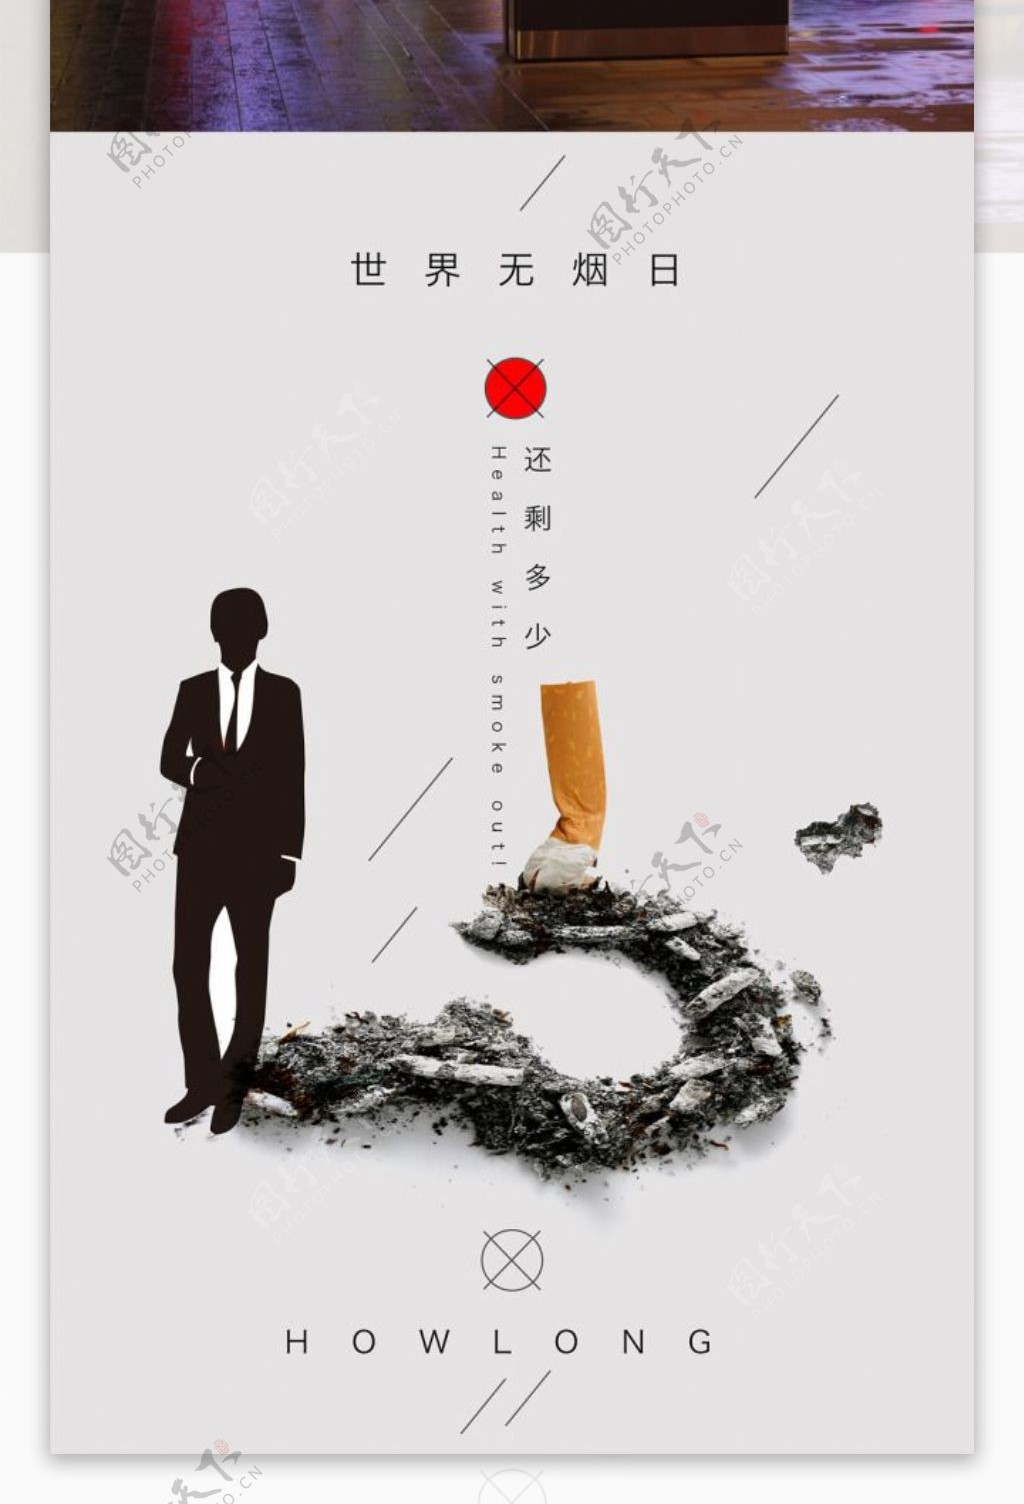 世界无烟日公益广告